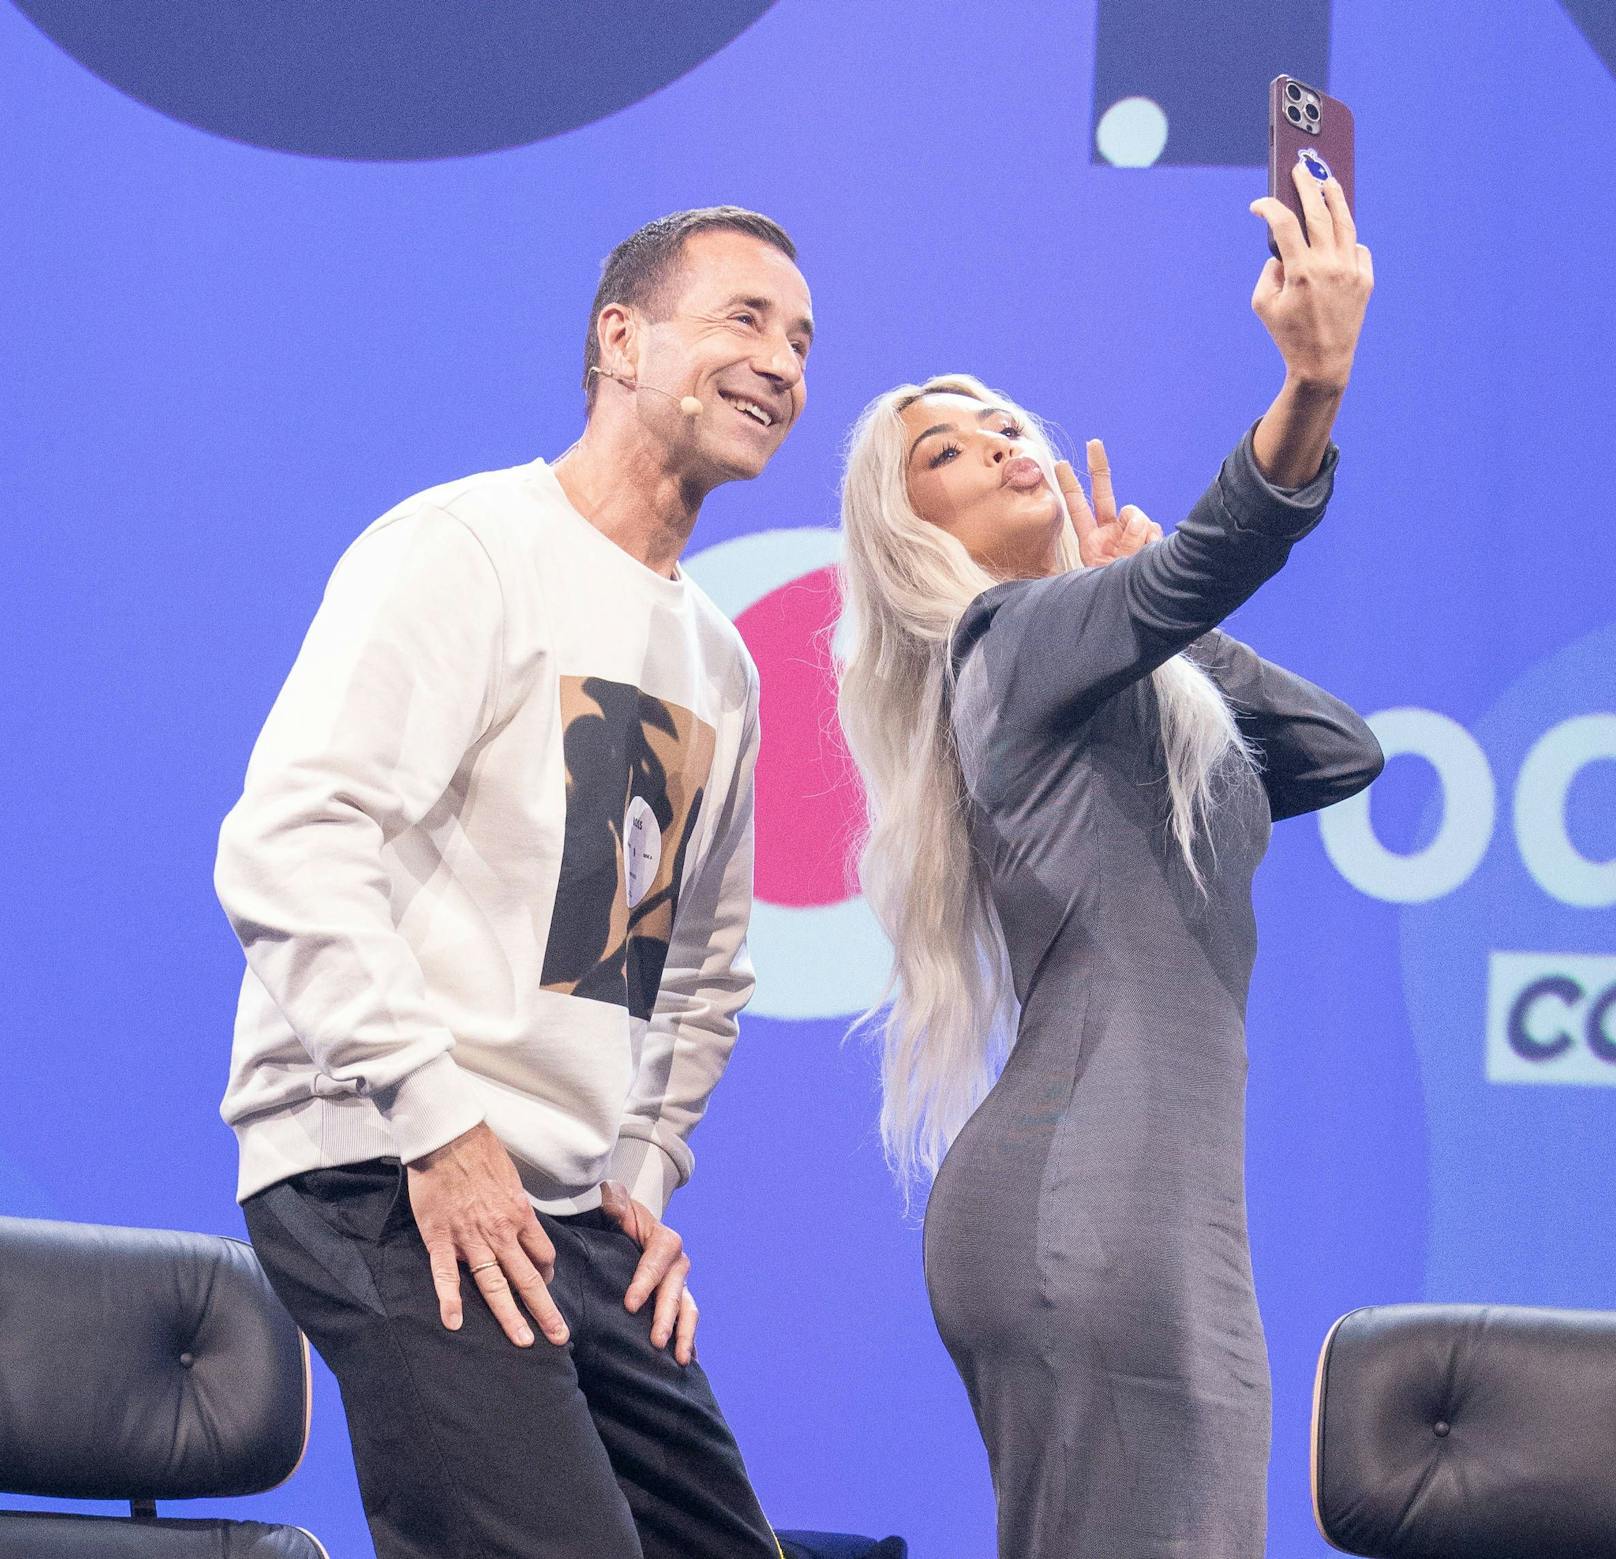 Der gemeinsame Auftritt von Kai Pflaume und Kim Kardashian am "OMR Festival" wurde dann noch mit einem Selfie festgehalten.